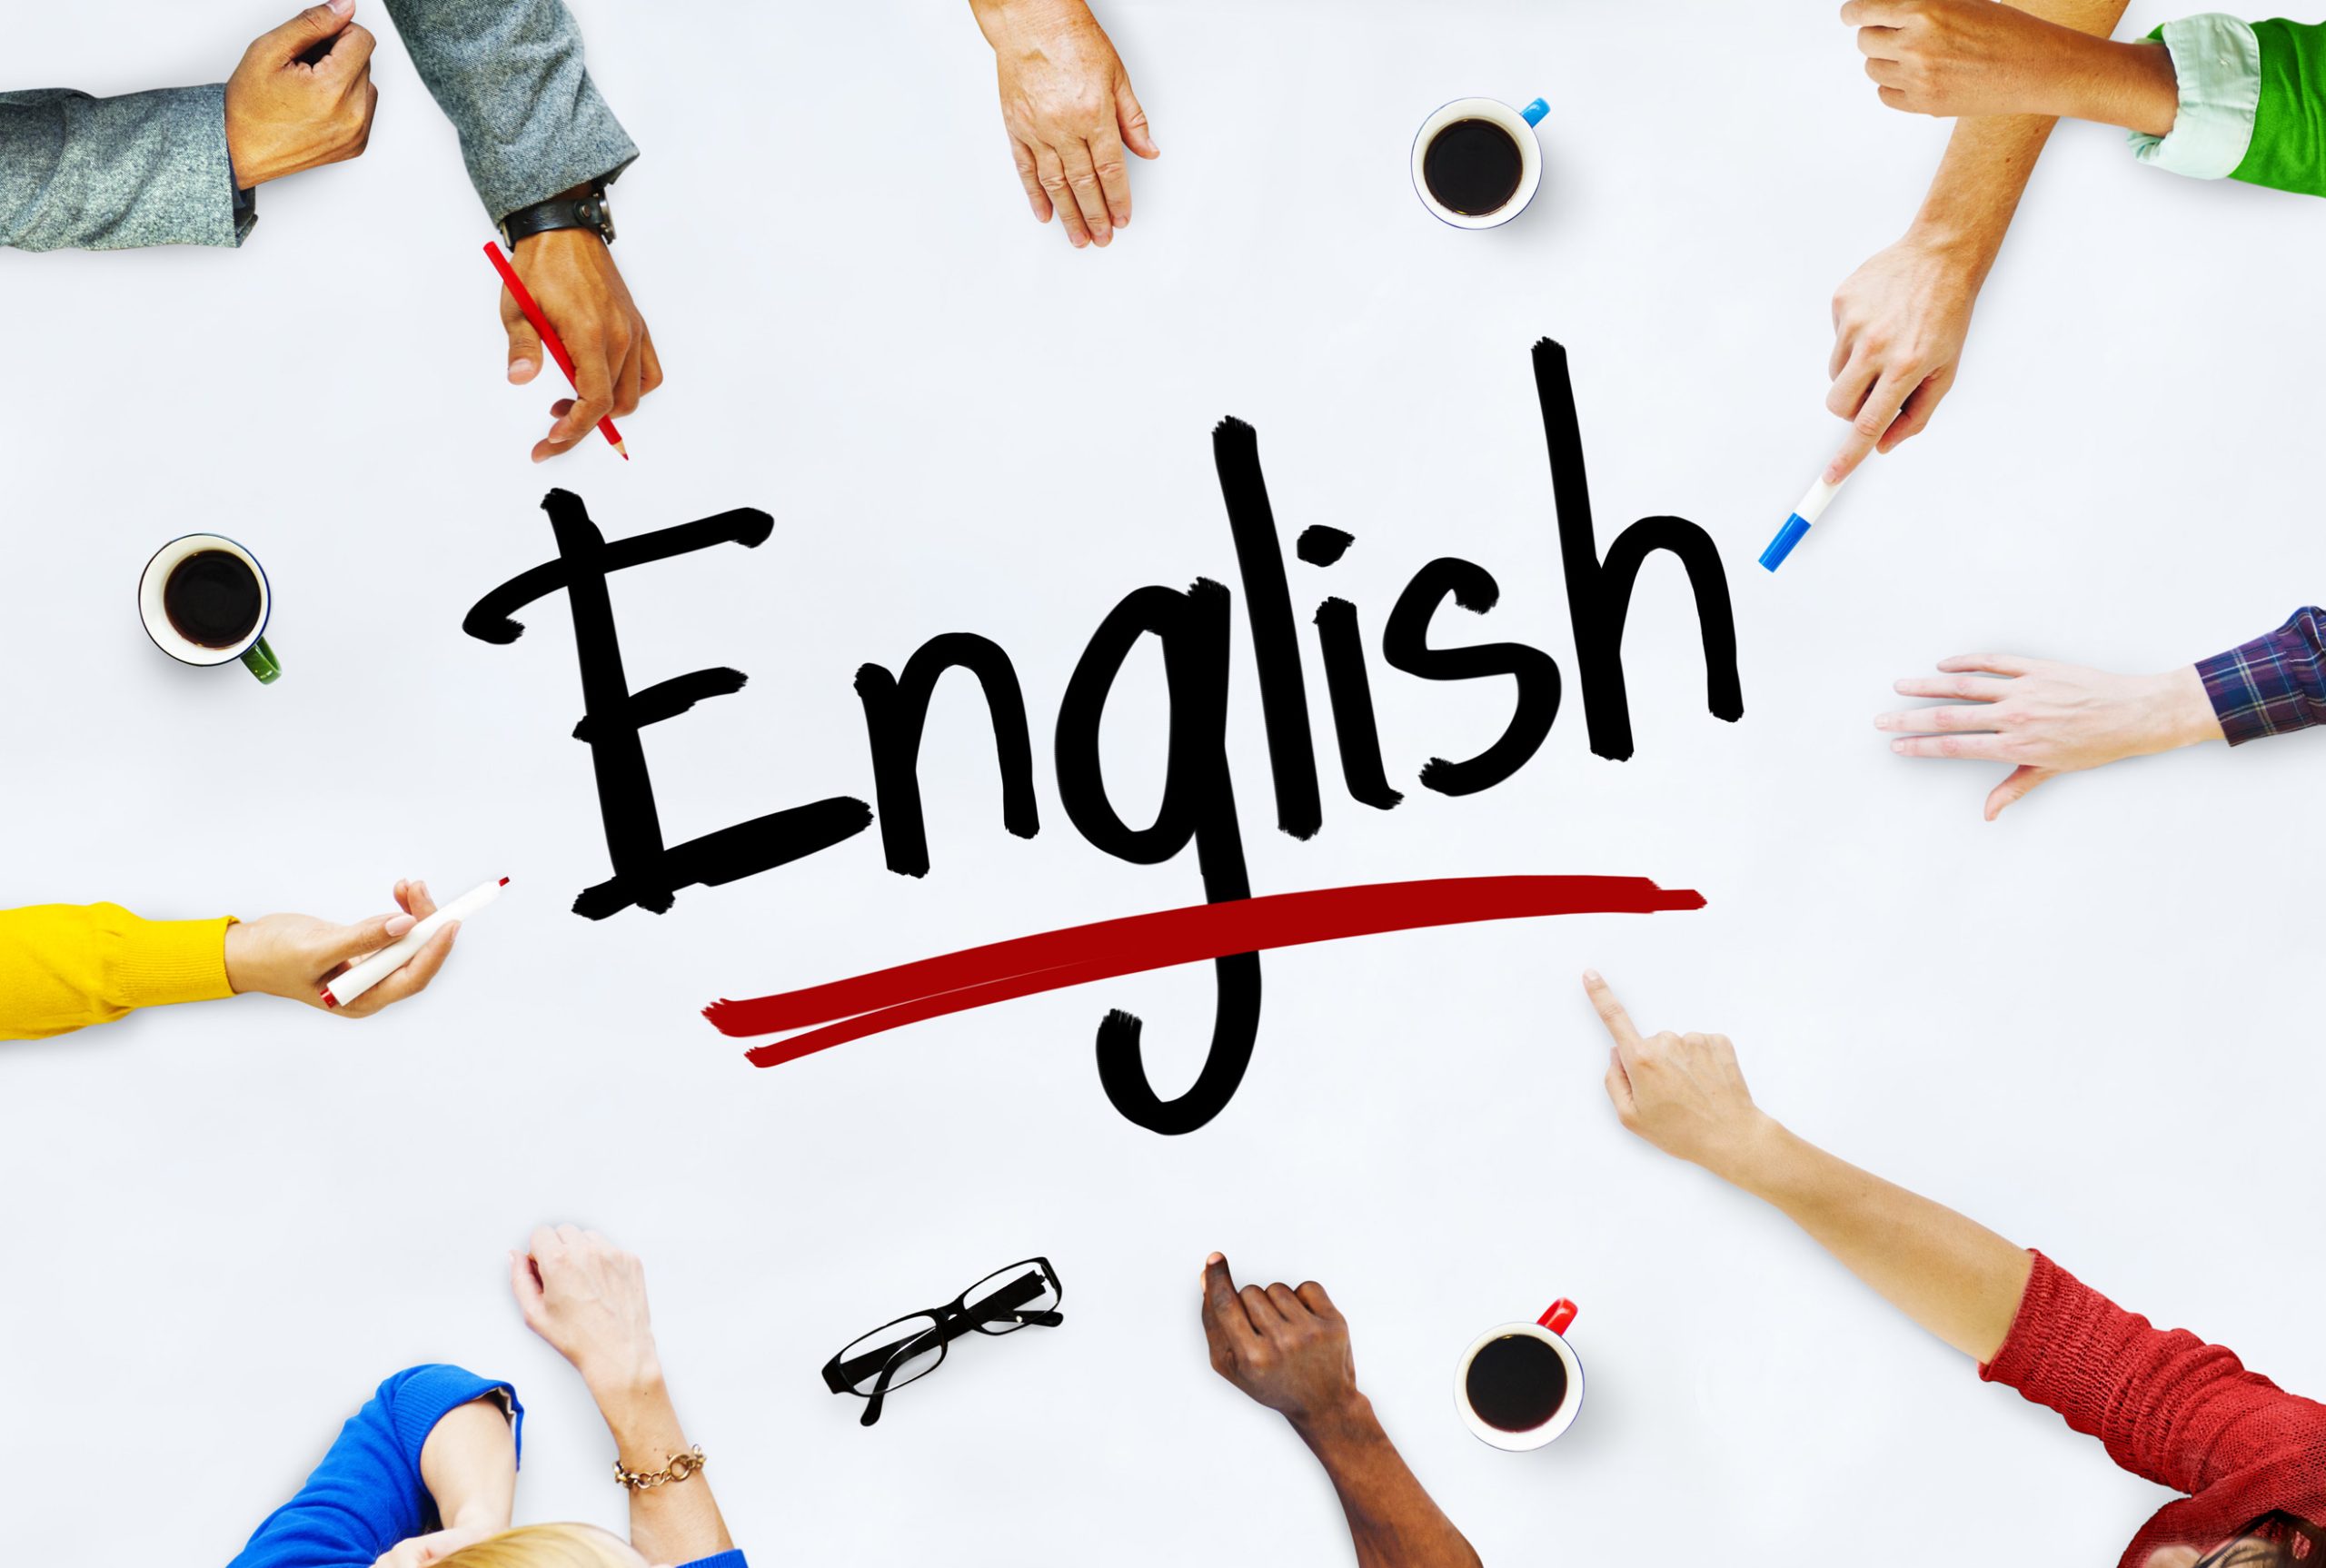 Курсы английского языка онлайн - плюсы и особенности